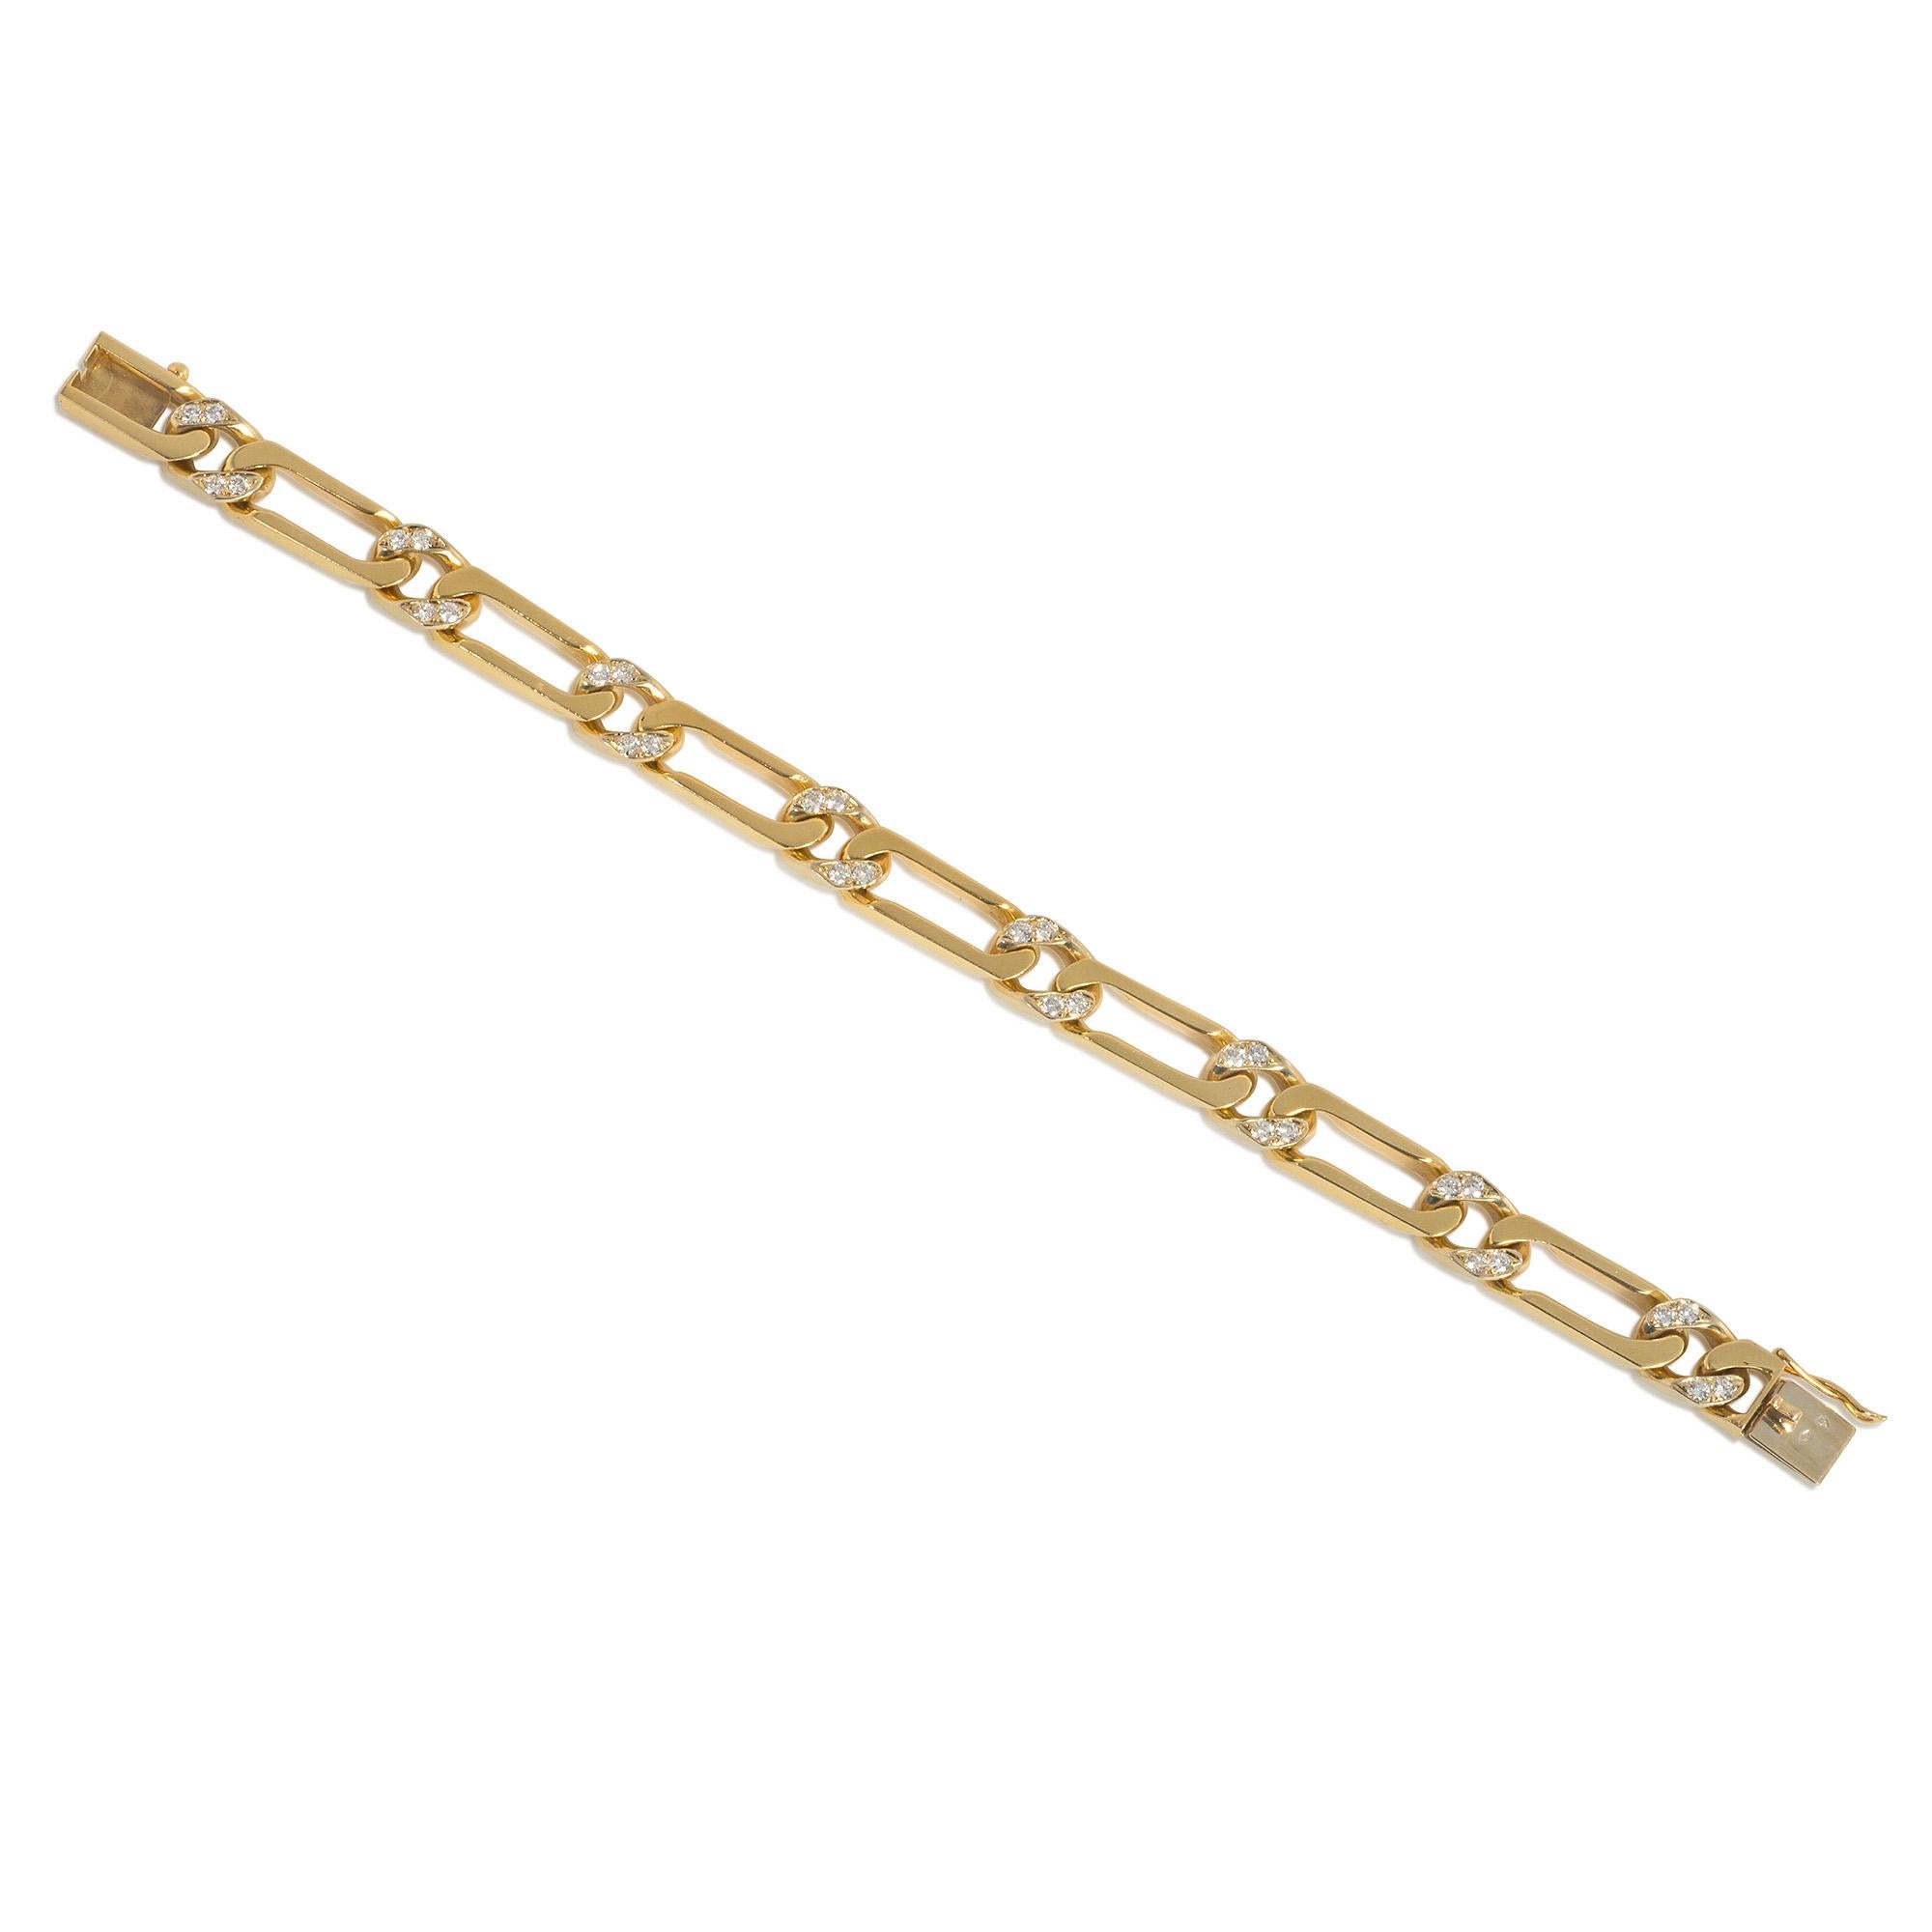 Ein Figaro-Gliederarmband aus Gold und Diamanten aus der Mitte des Jahrhunderts, 18 Karat, mit einem Kastenverschluss mit Achter-Sicherung. Van Cleef & Arpels, Frankreich. #B2174 A43. Atw-Diamanten 0.96 ct.  Wunderbar kräftig und gleichzeitig